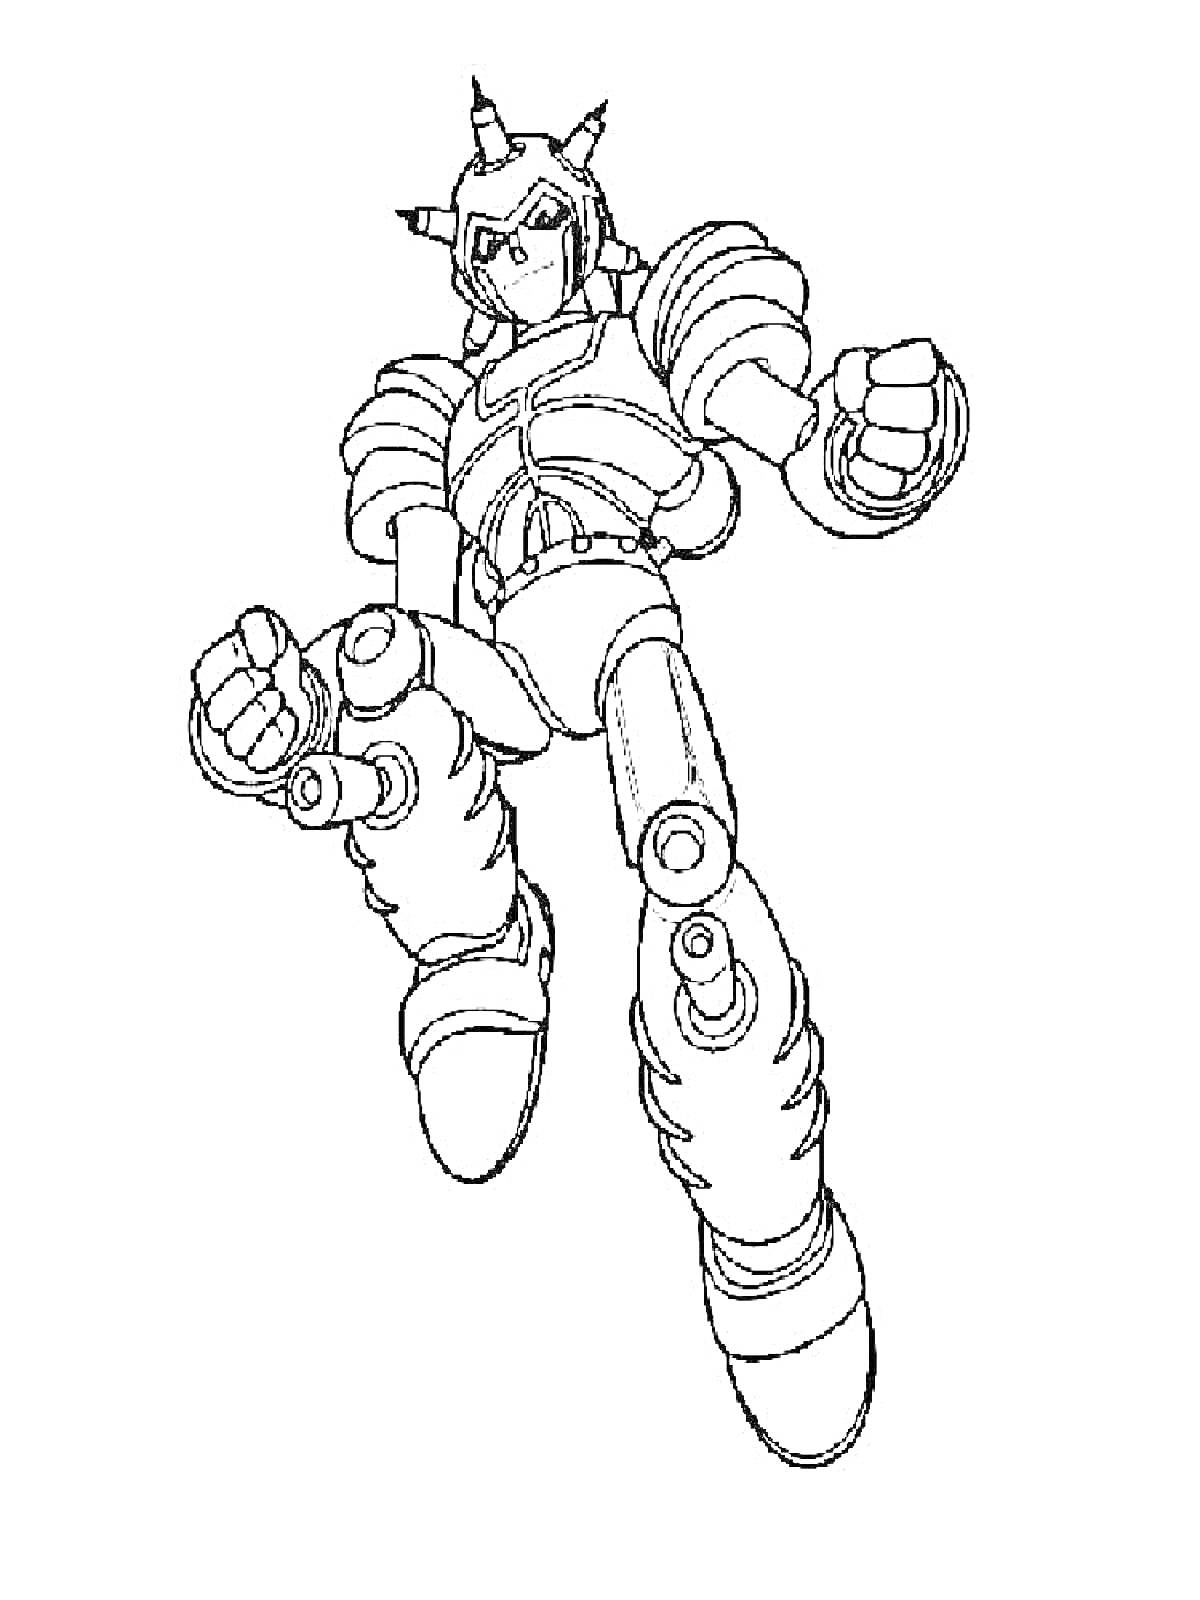 Раскраска Астробой в боевой позе с приподнятыми кулаками, робо-костюм с шипами на голове и броней на плечах